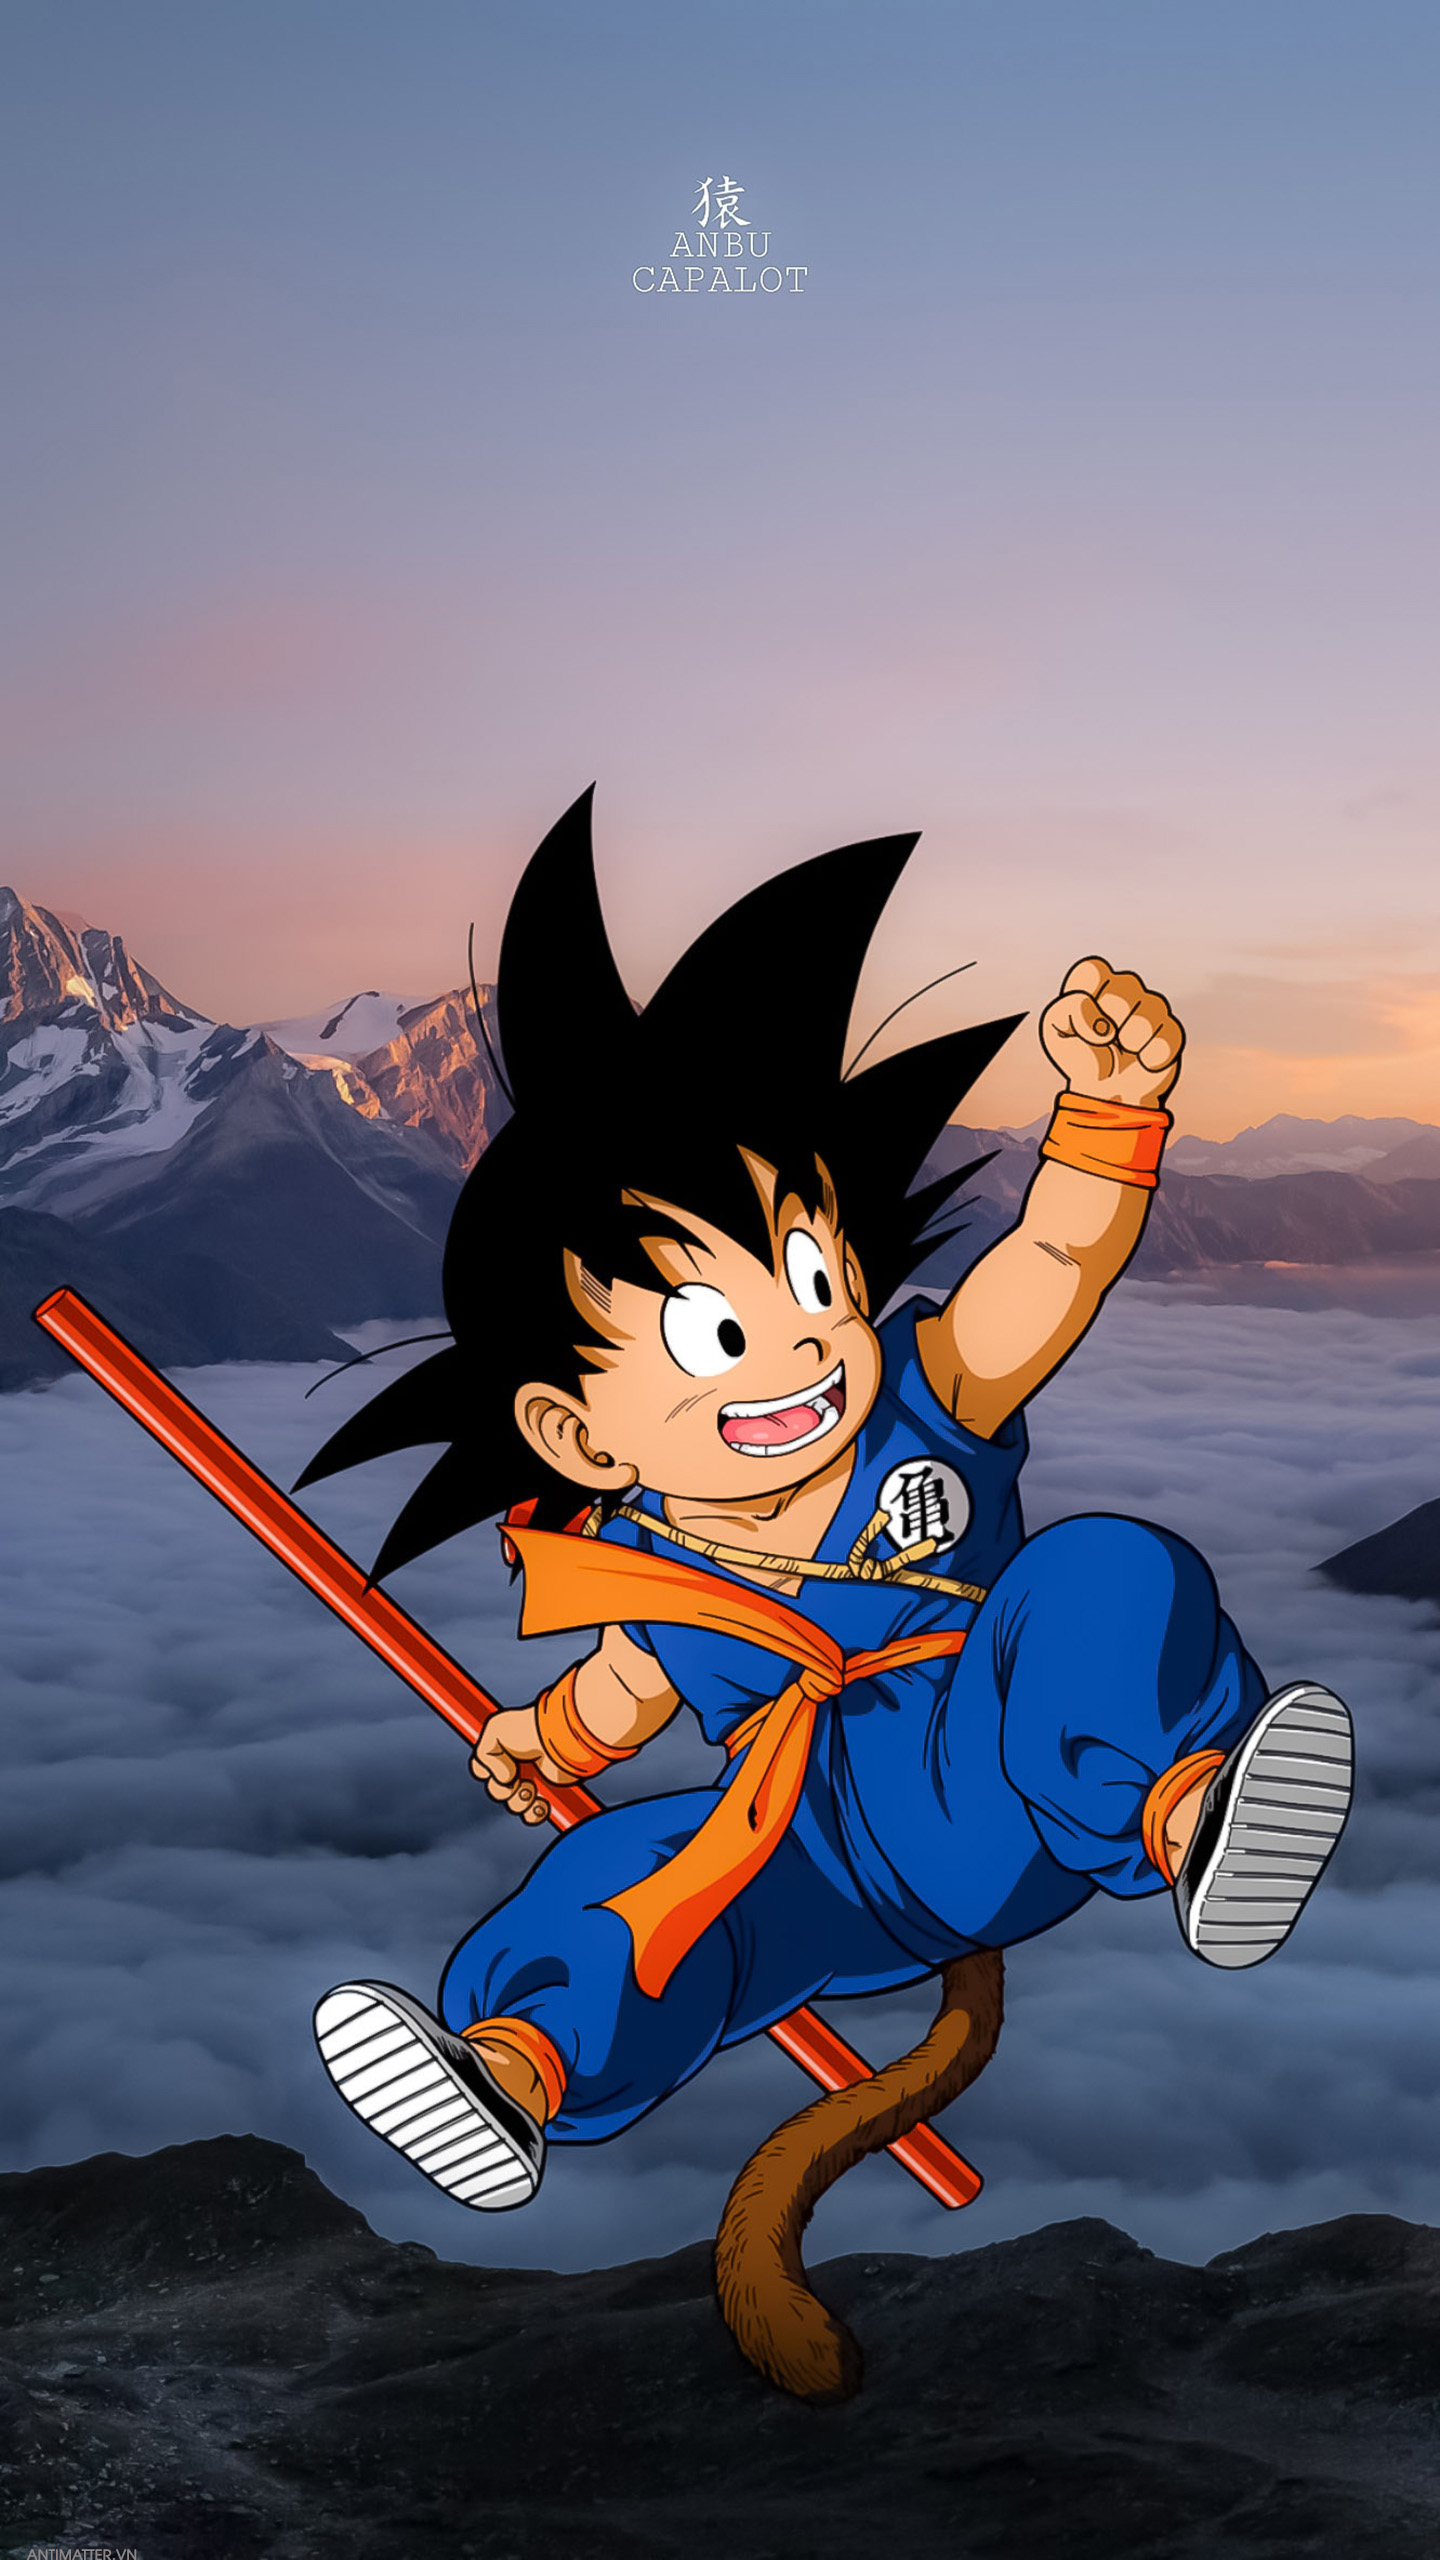 Dragon Ball: Hành trình epic của Son Goku và các chiến binh Z để bảo vệ Trái Đất khỏi những kẻ thù đáng sợ là một trong những bộ anime/manga được yêu thích nhất mọi thời đại. Cùng xem lại các khung hình đỉnh cao về Dragon Ball và thưởng thức một thế giới võ thuật đầy phiêu lưu.